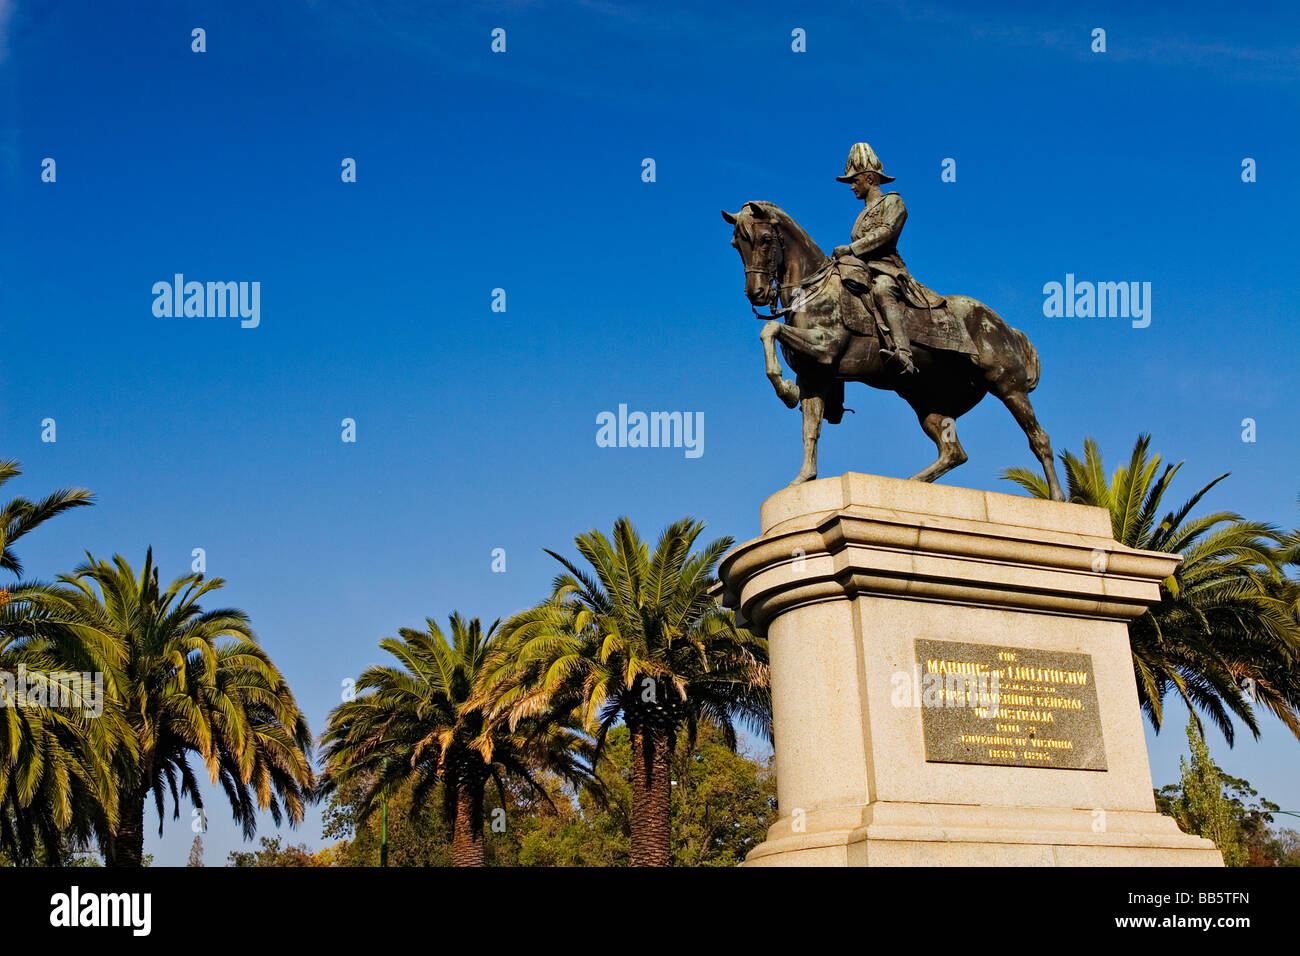 Melbourne / Monuments le 'Marquis de Linlithgow' memorial monument.Melbourne Victoria en Australie. Banque D'Images